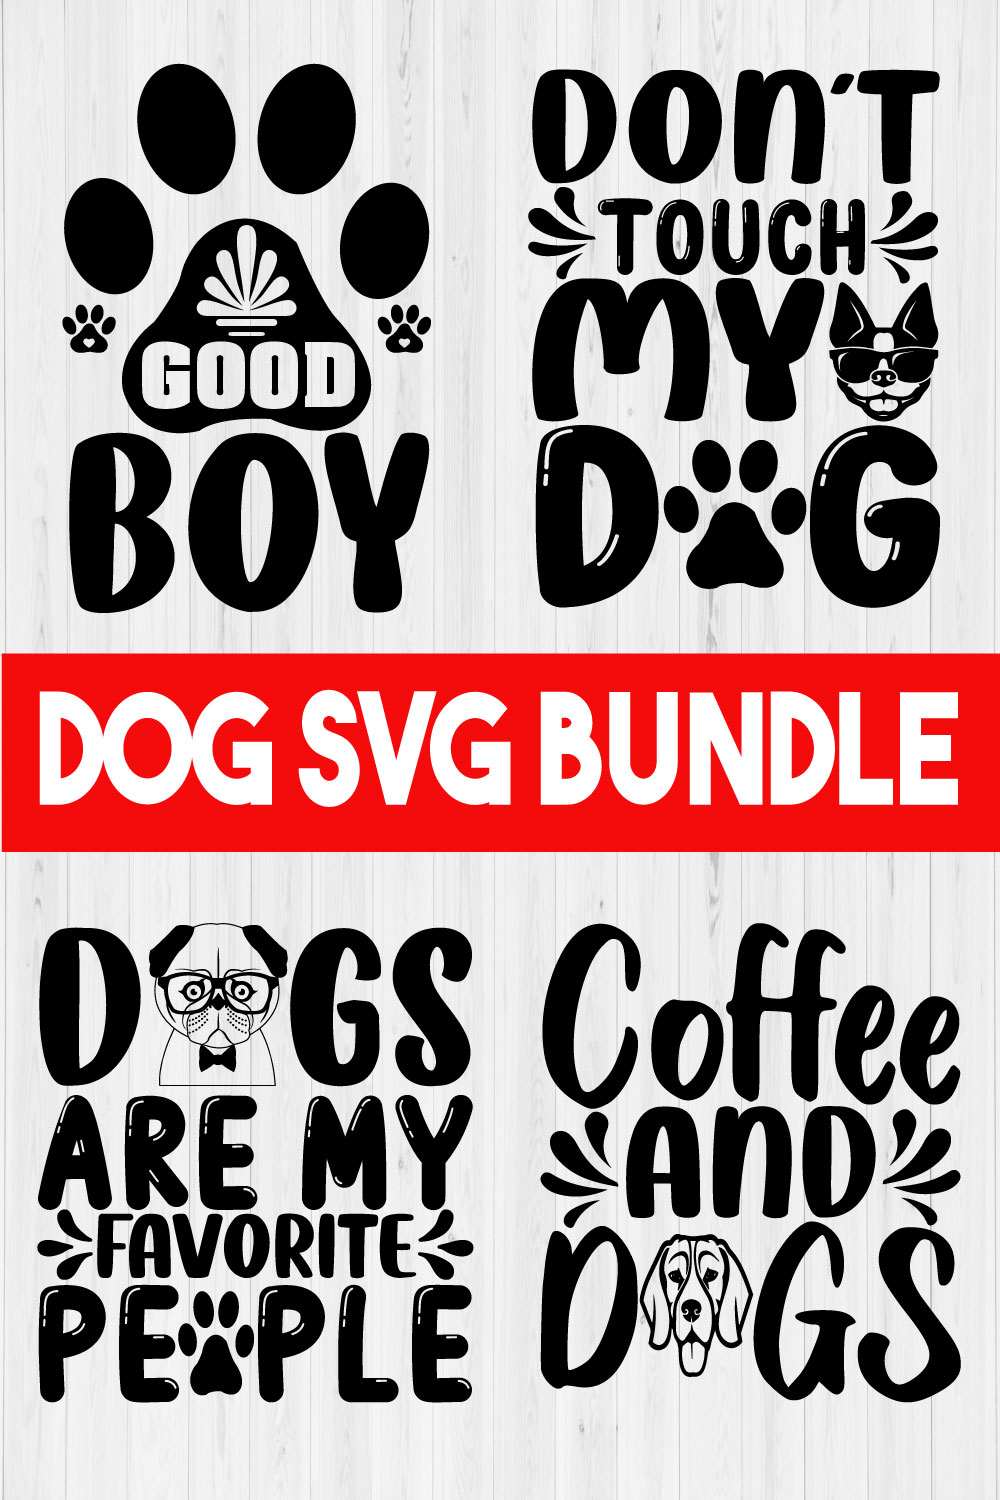 Funny Dog Svg Design Bundle Vol5 pinterest preview image.